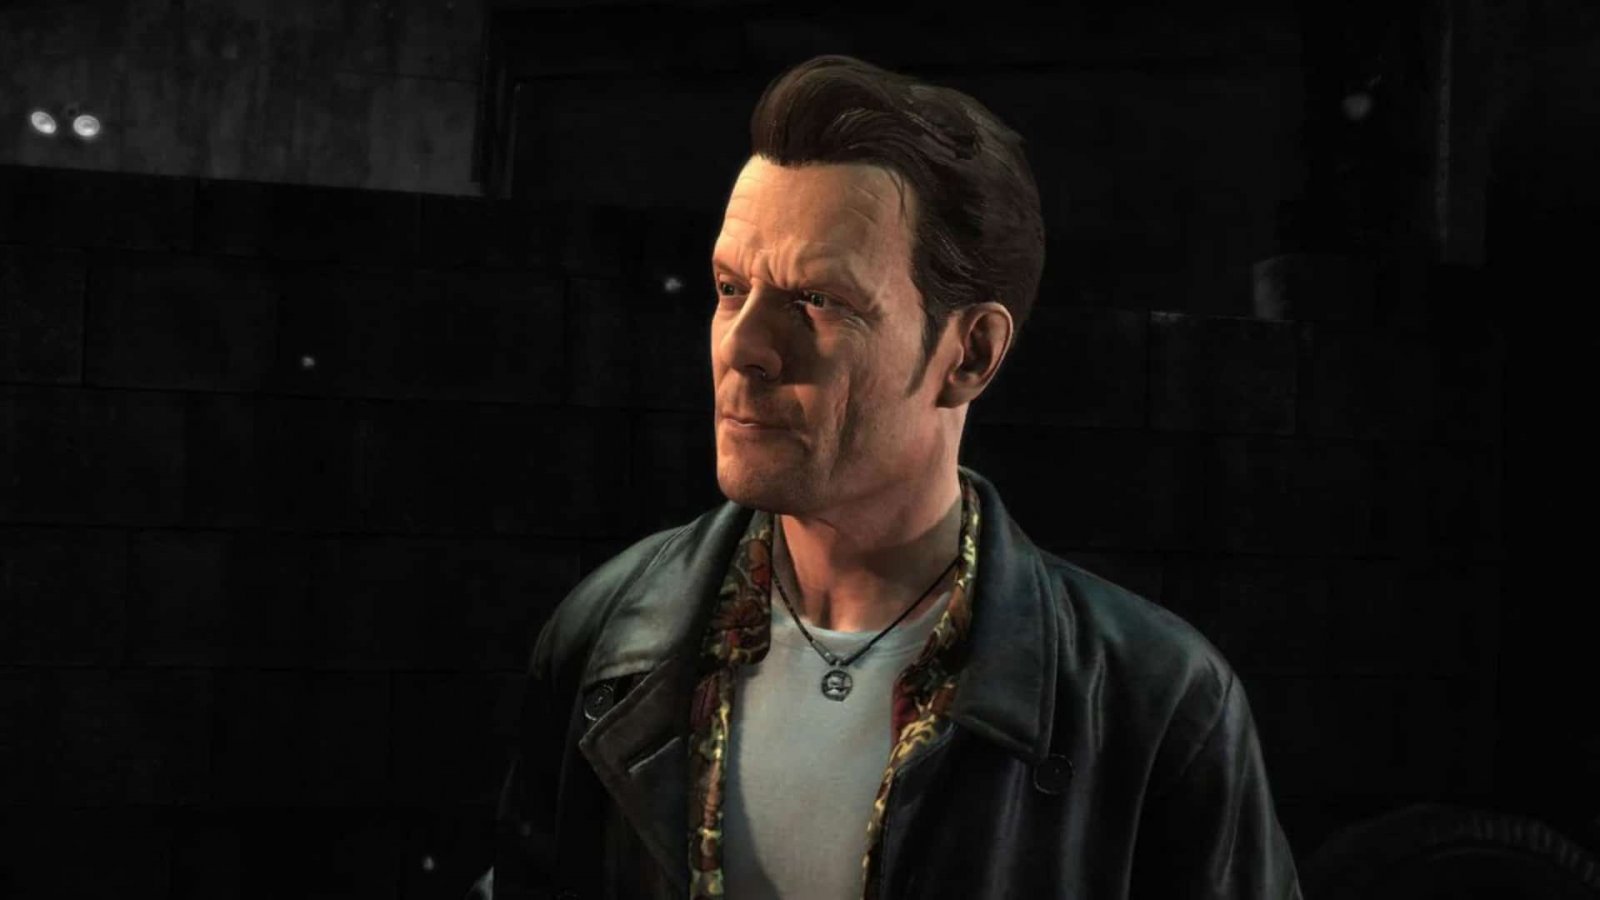 Max Payne 1 & 2 Remake totalmente finanziati da Rockstar Games, budget simile ad Alan Wake 2